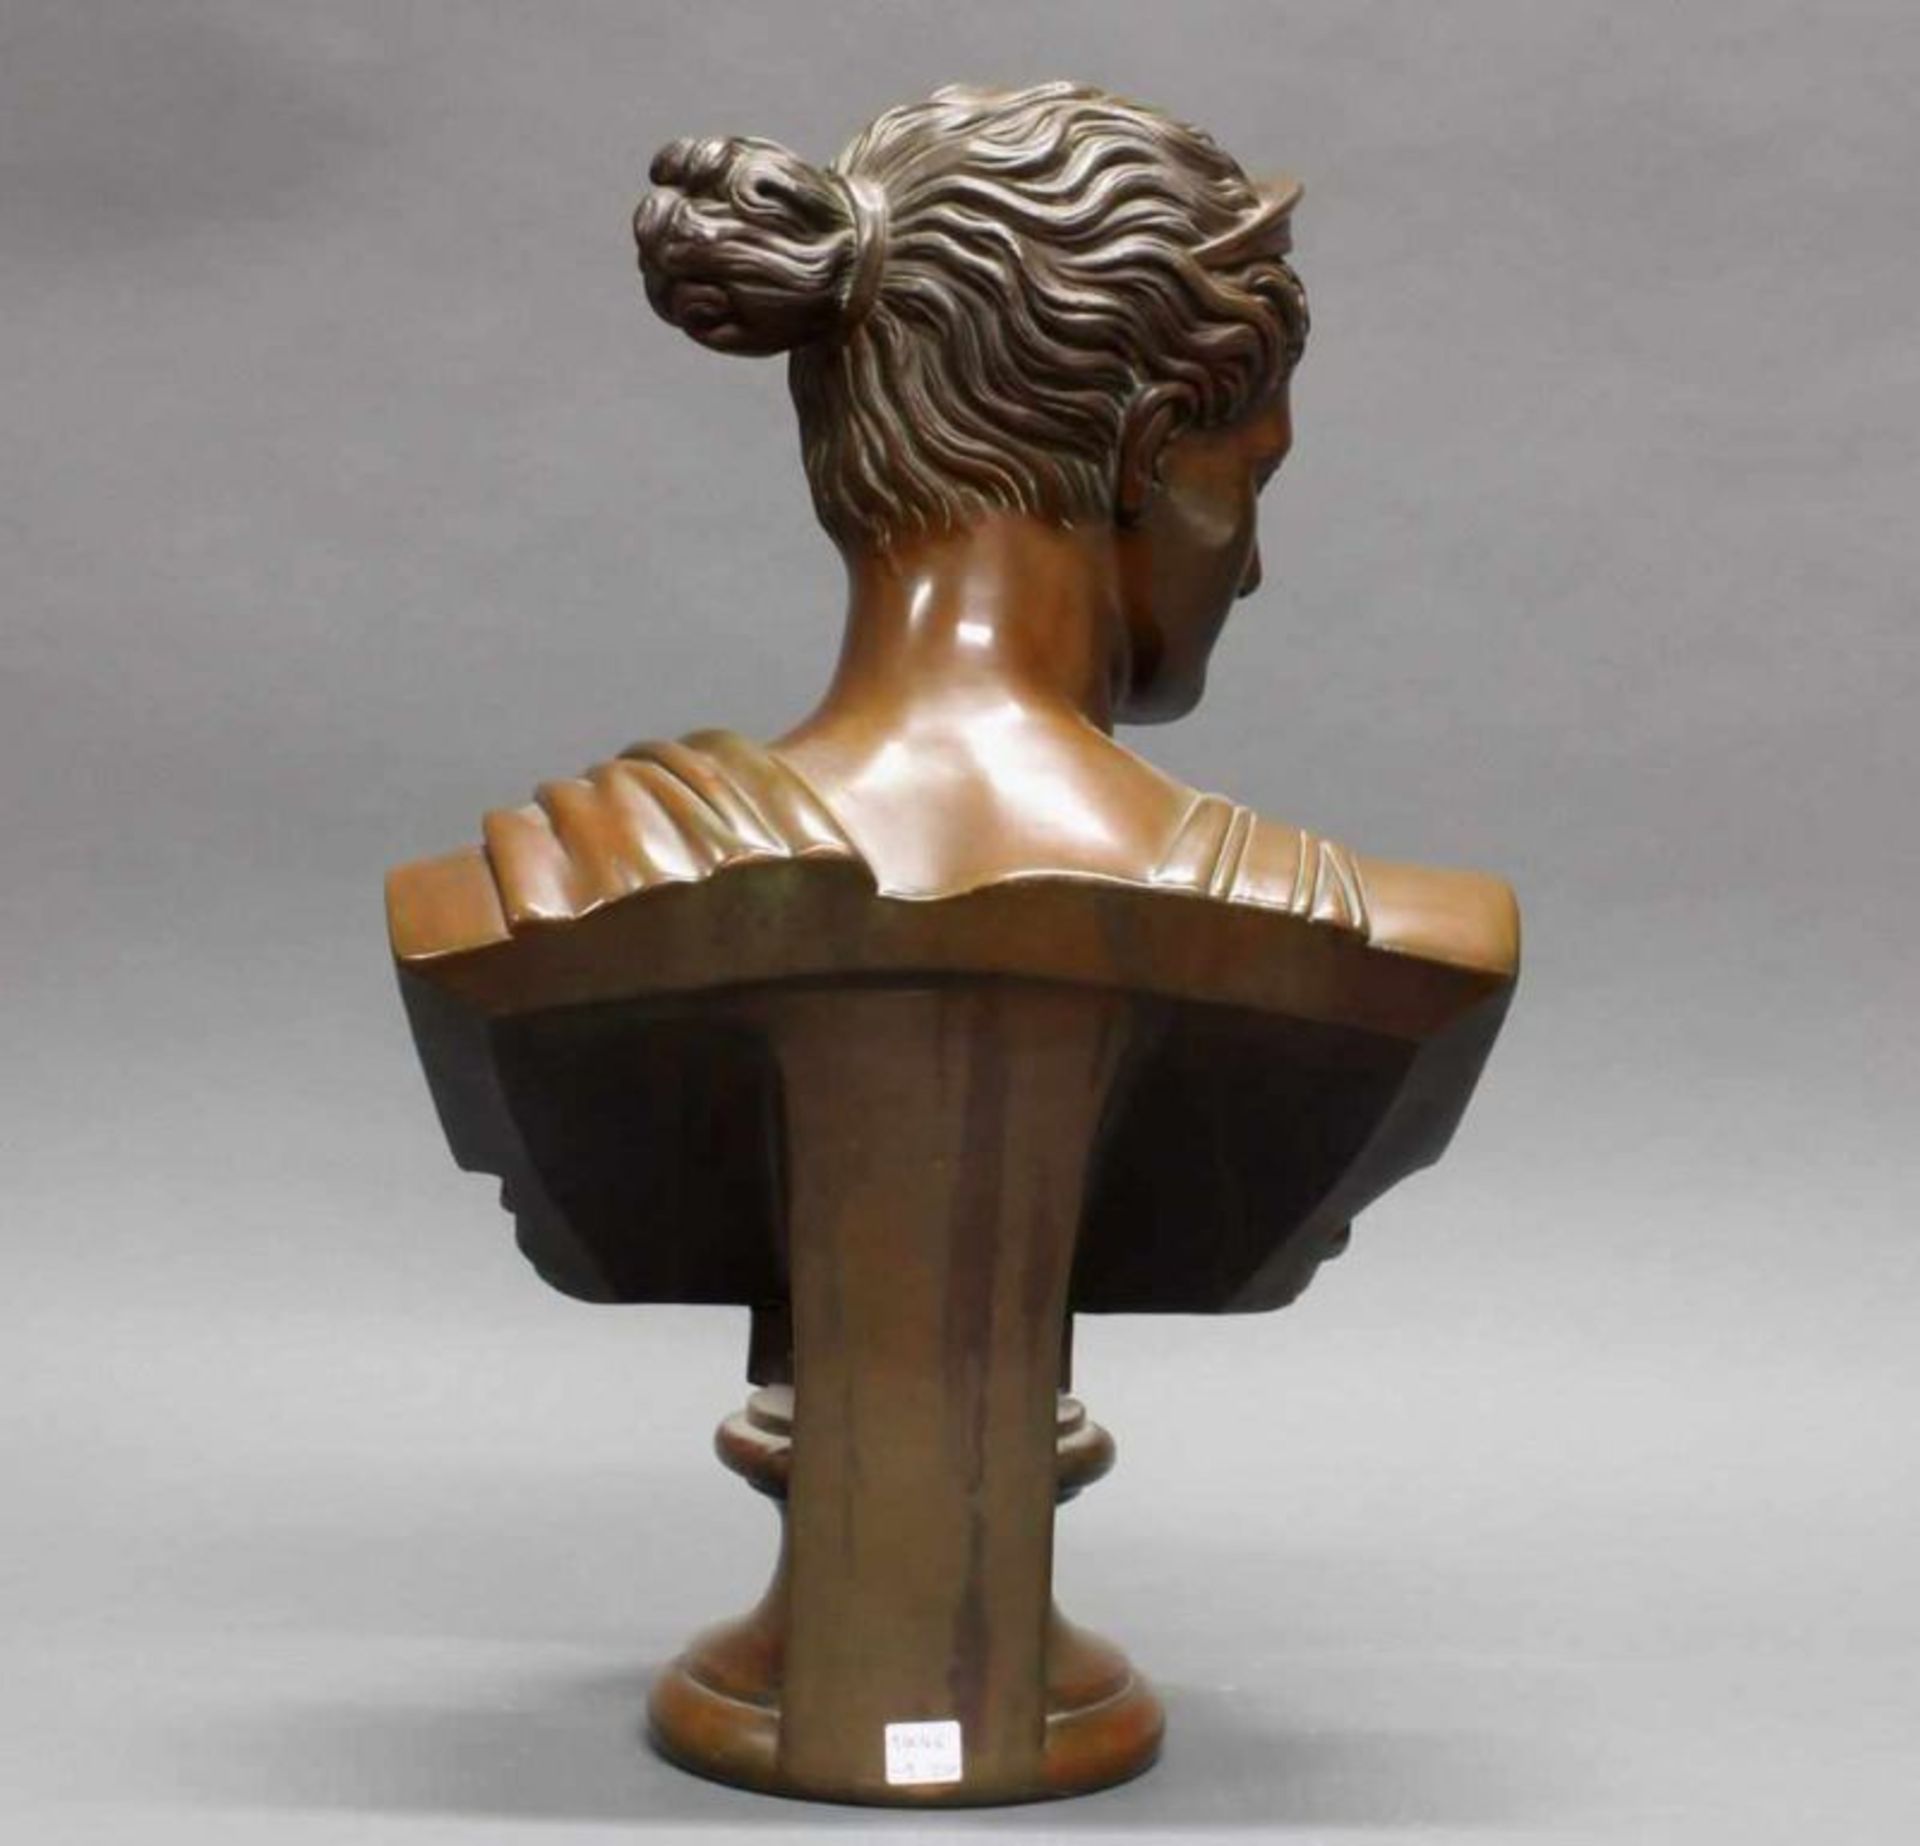 2 Terracottabüsten, bronziert, "Diana", "Apoll", nach antiken Vorbildern, 19./20. Jh., je 54 cm hoch - Image 4 of 8